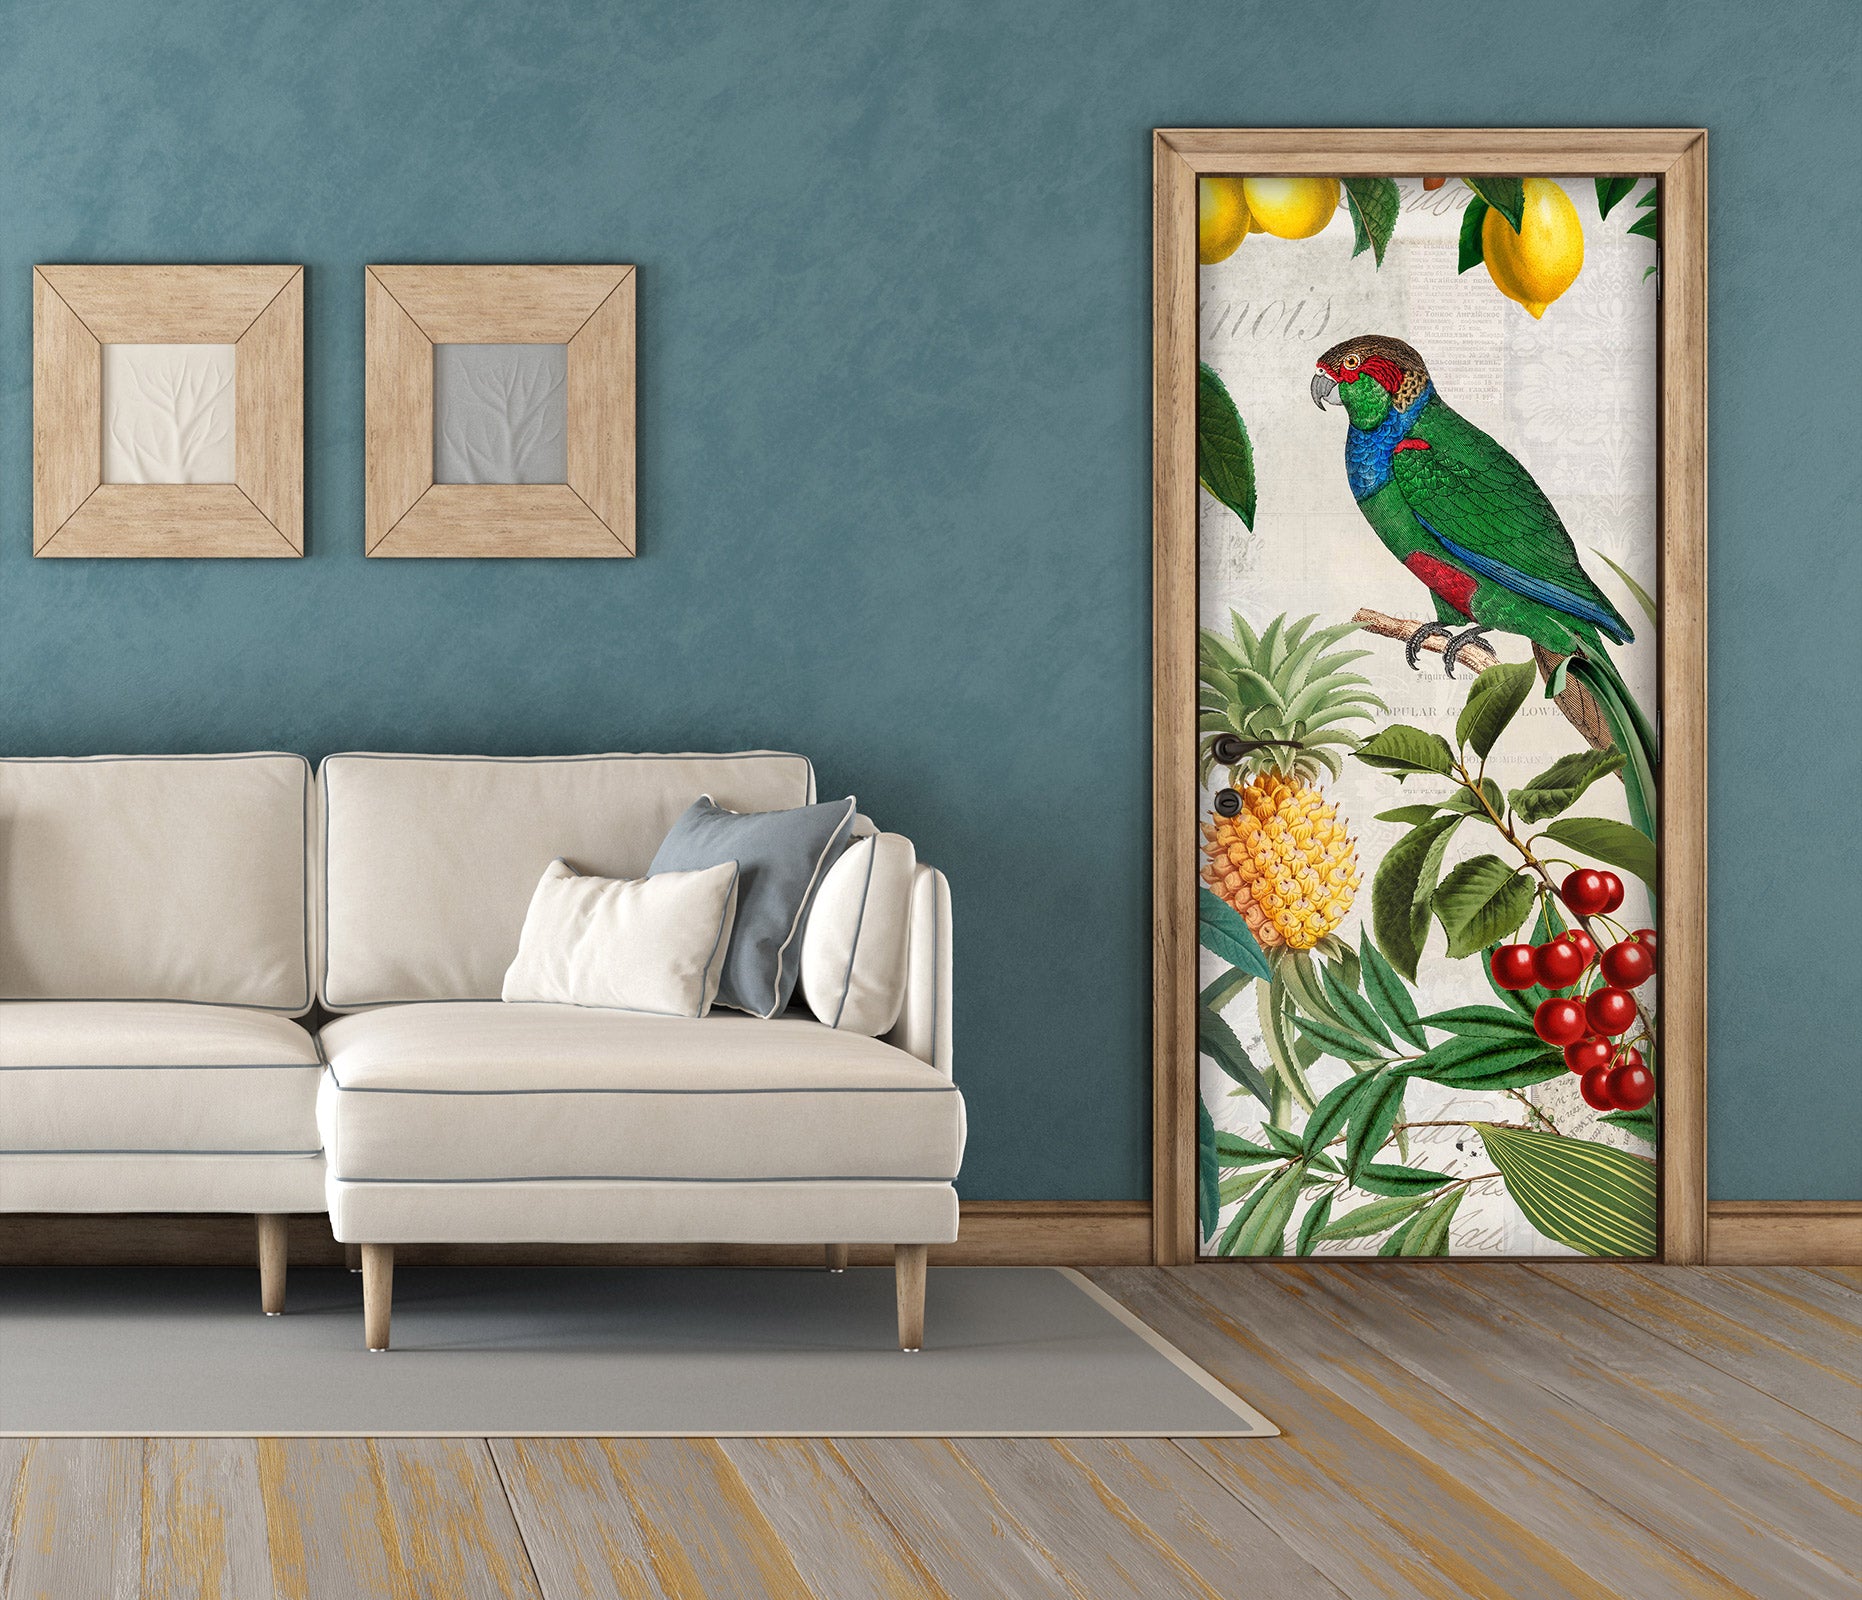 3D Pineapple Cherry Parrot 118132 Andrea Haase Door Mural